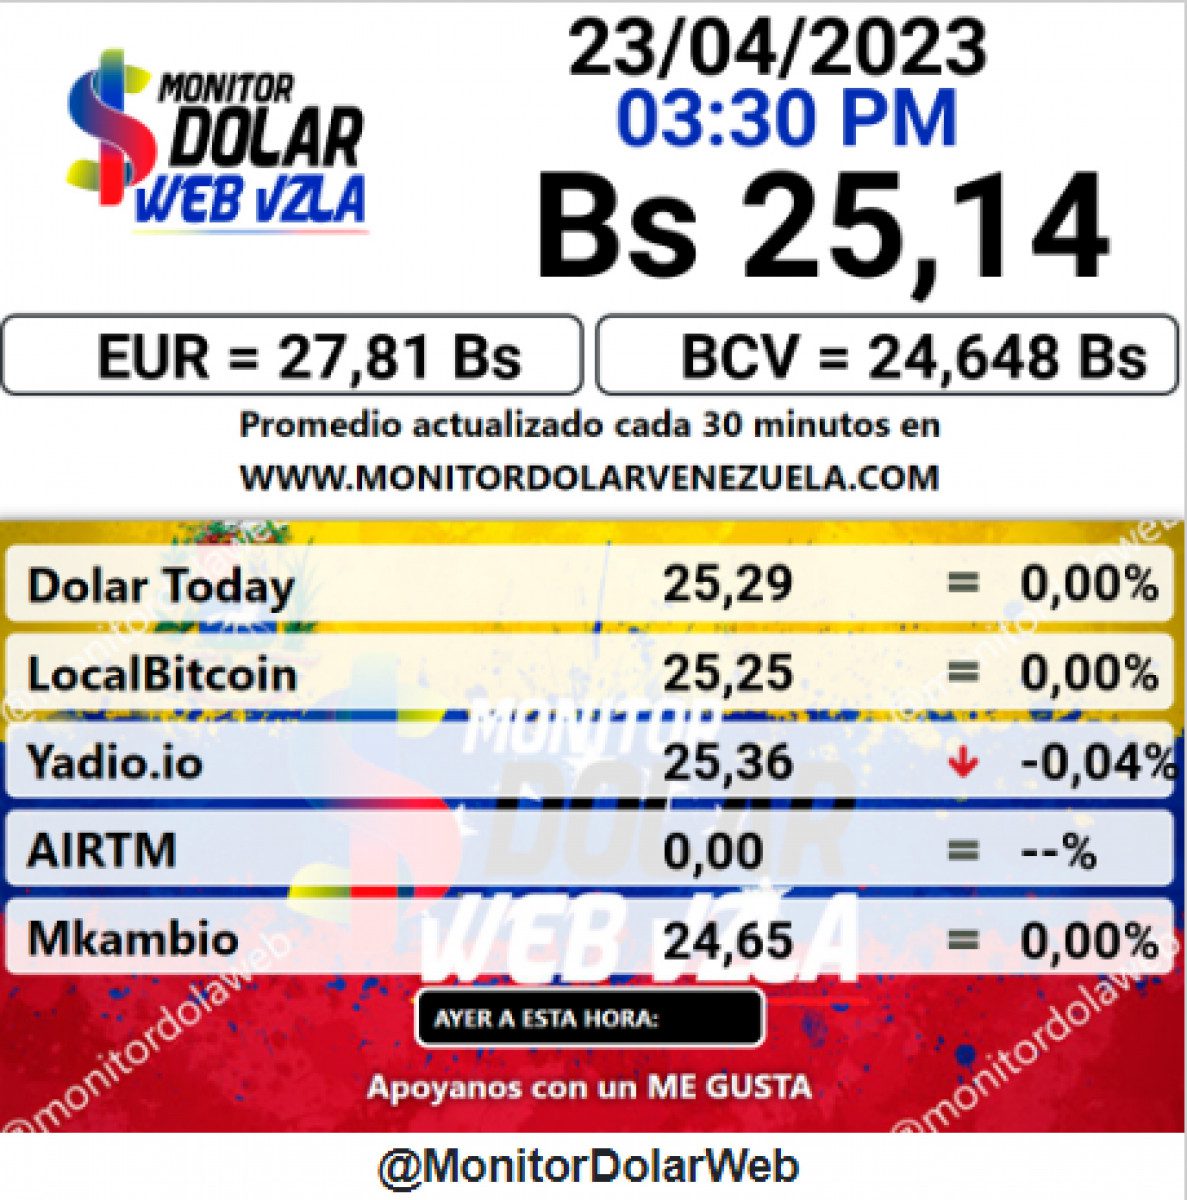 dolartoday en venezuela precio del dolar este domingo 23 de abril de 2023 laverdaddemonagas.com monitor9y7